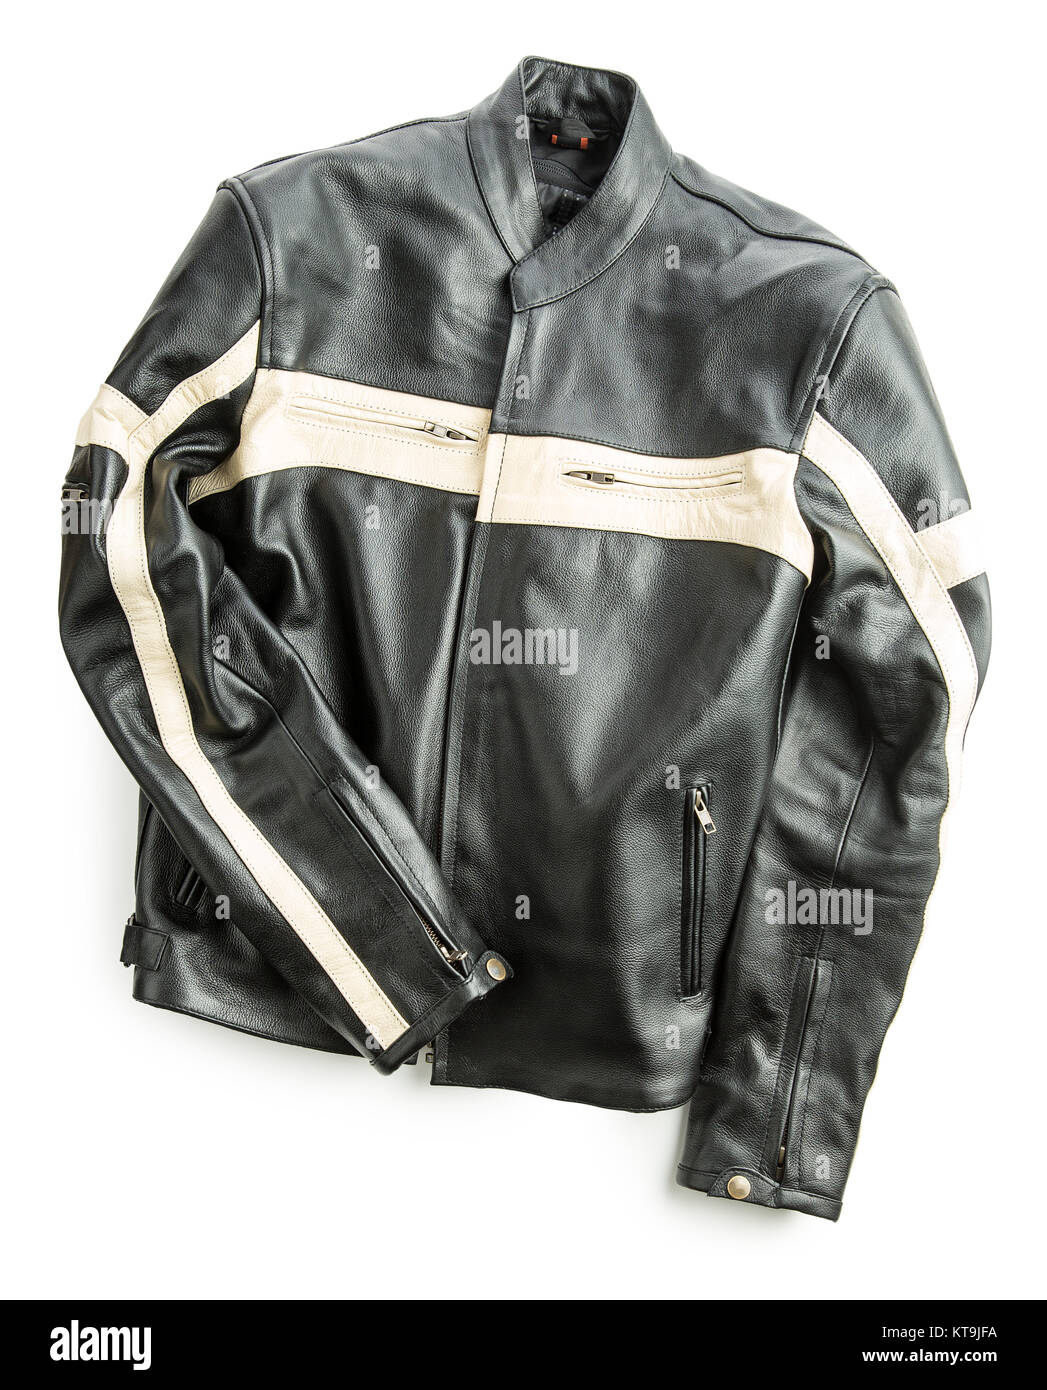 Leather motorcycle jacket. Stock Photo